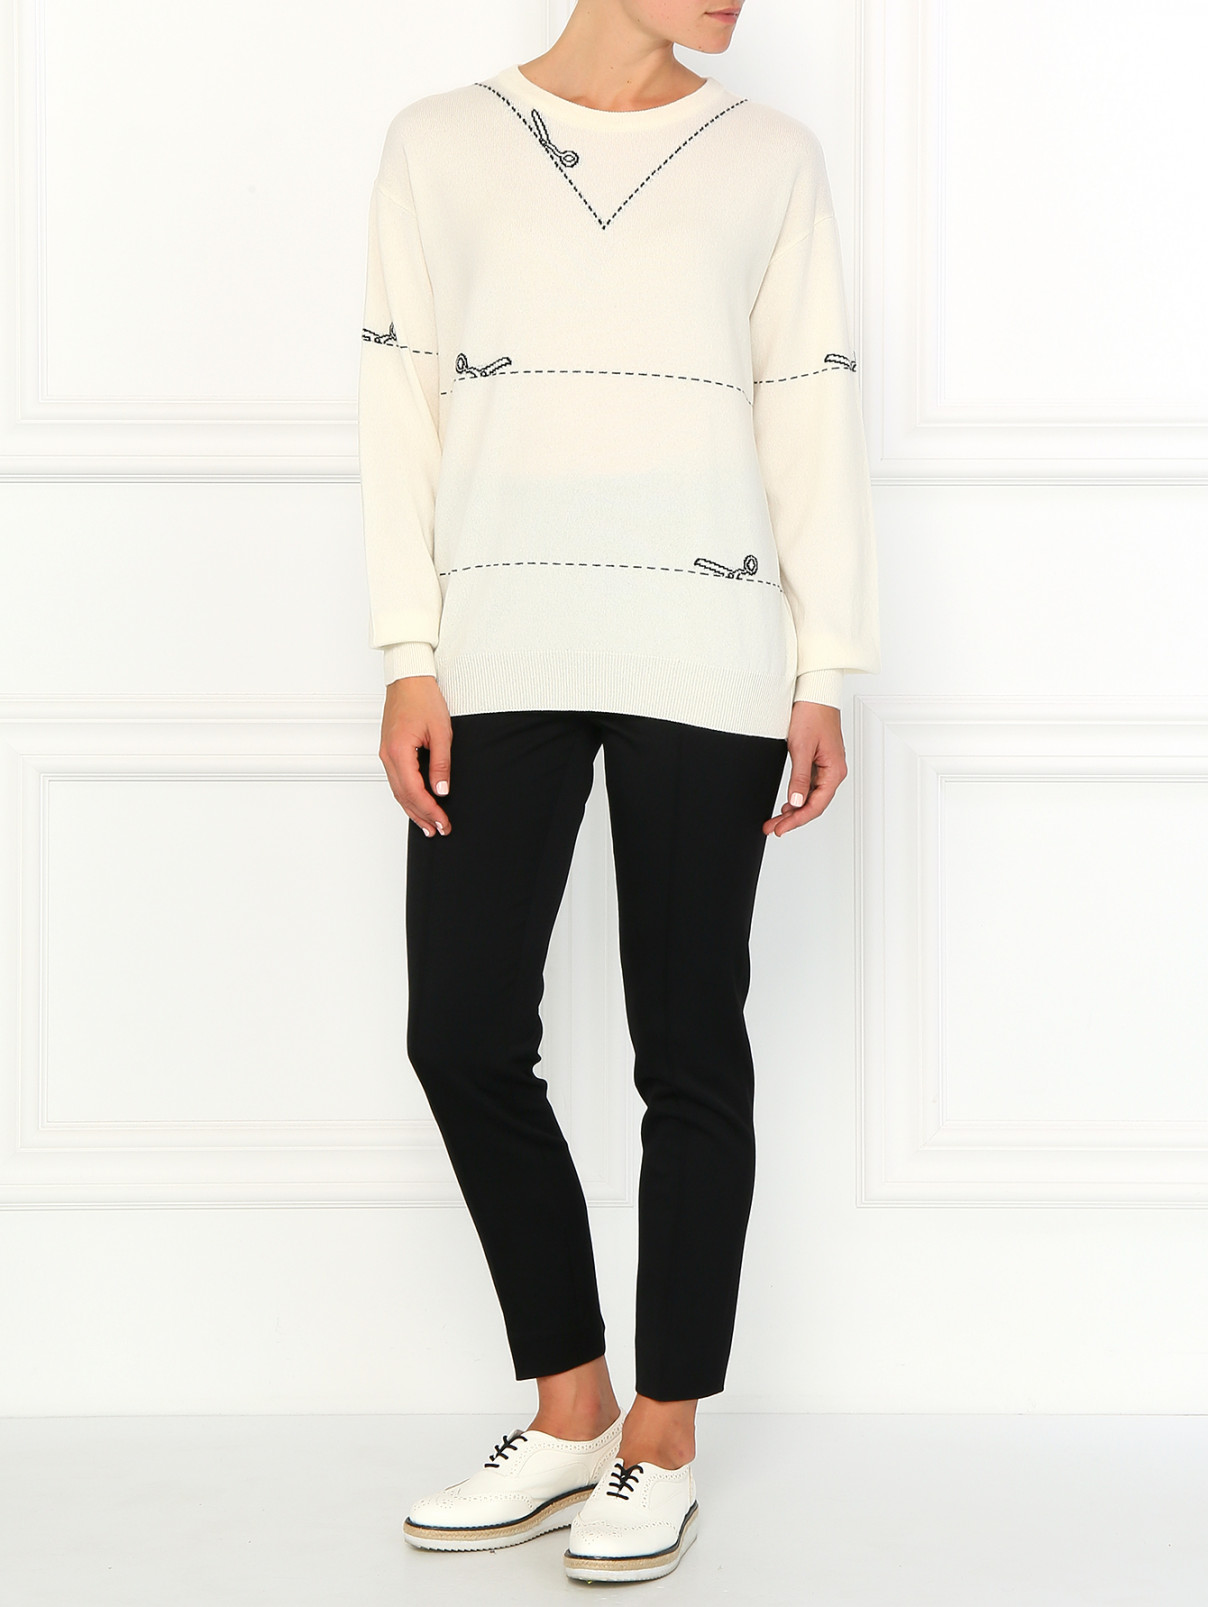 Кашемировый джемпер с узором Moschino Couture  –  Модель Общий вид  – Цвет:  Белый